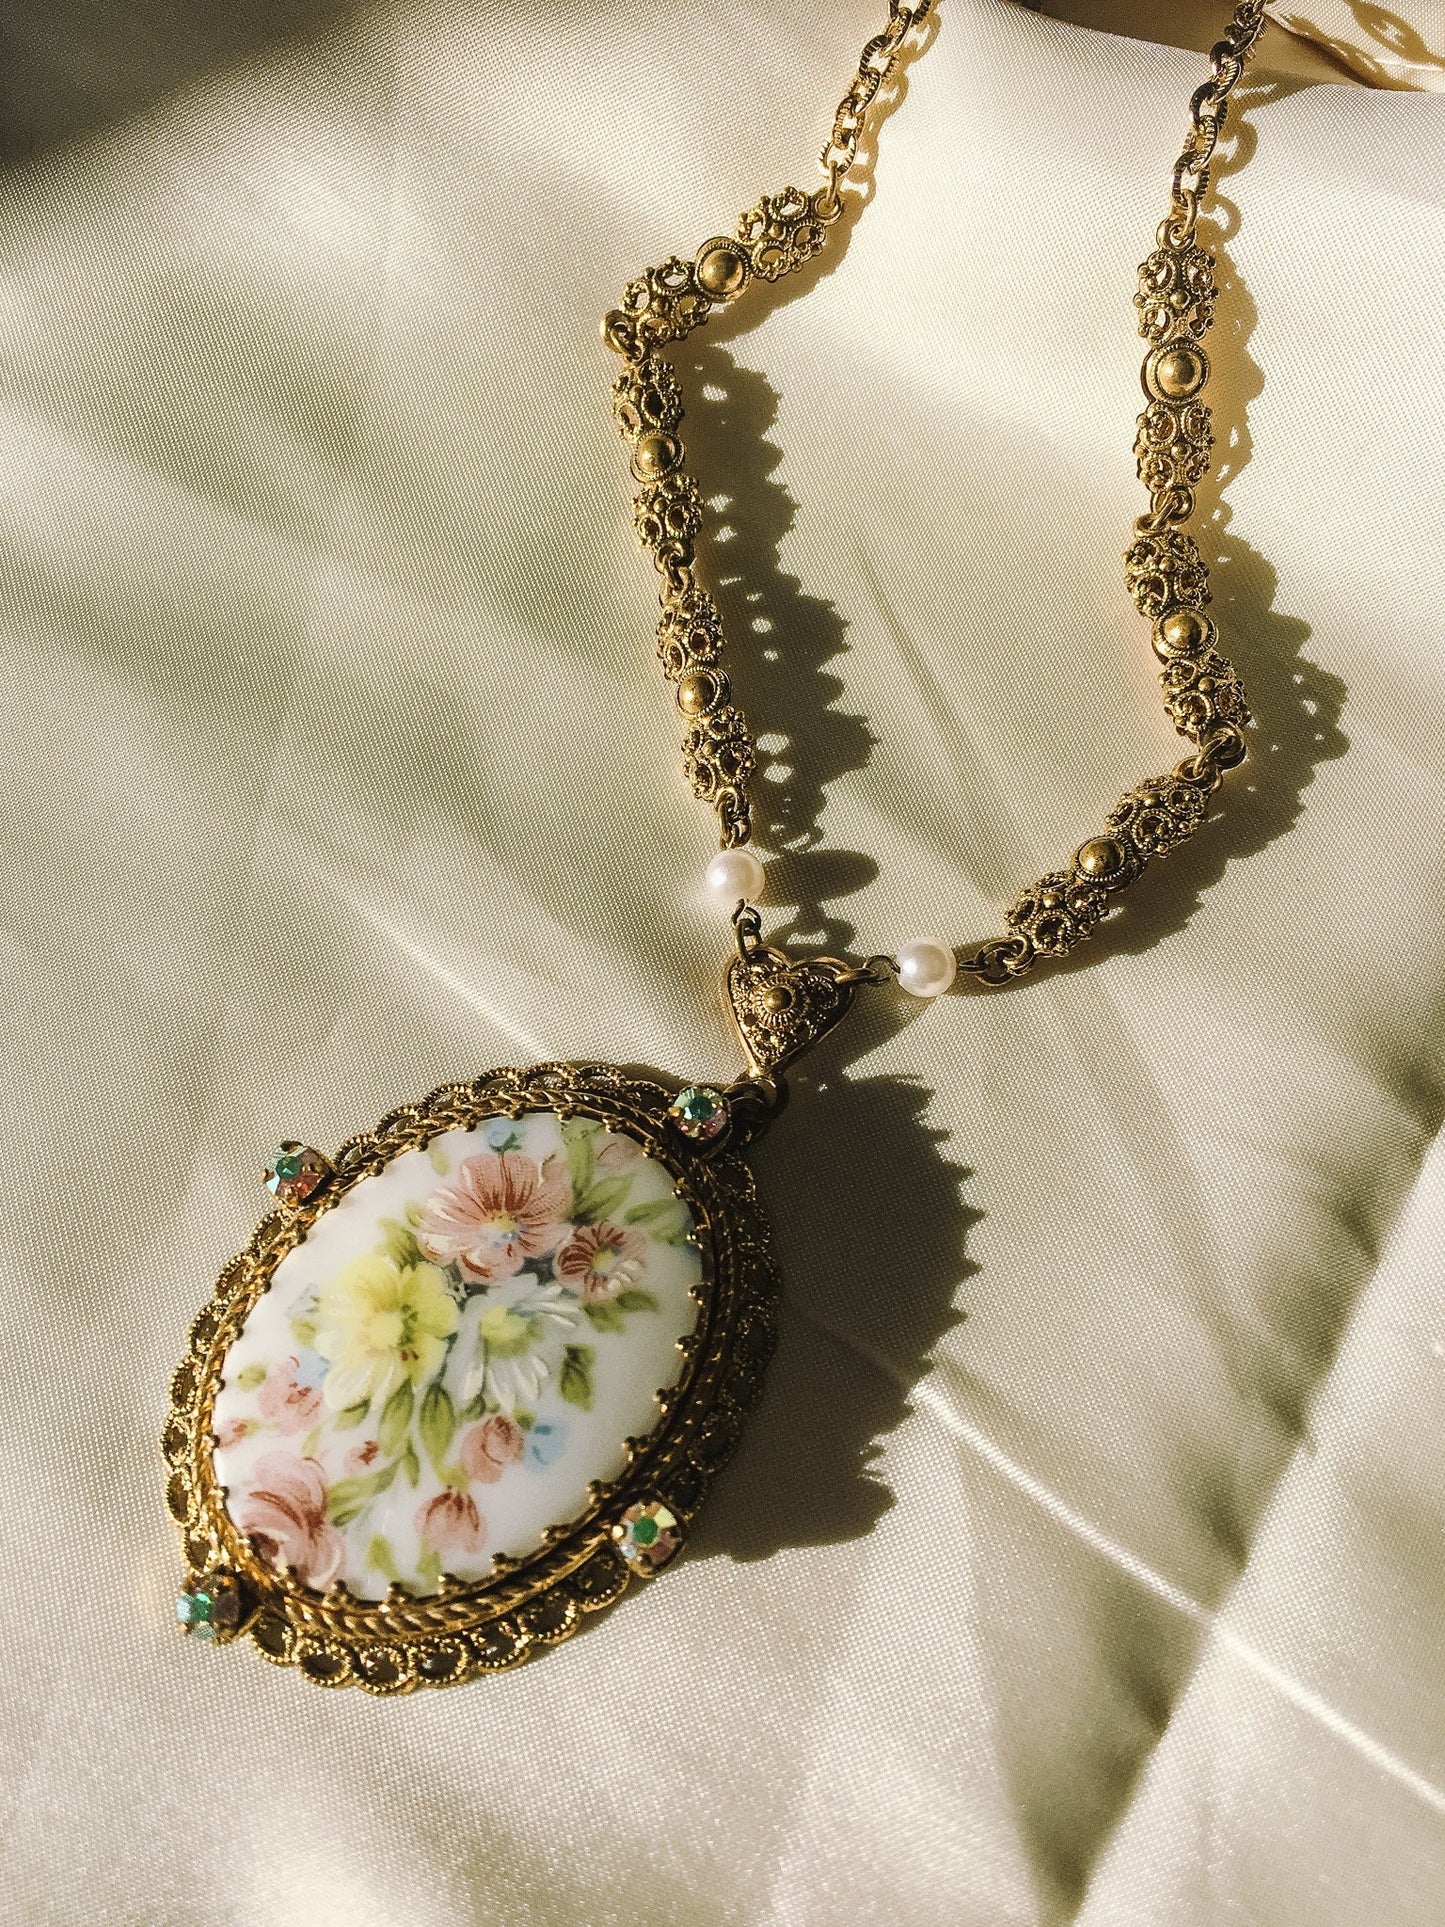 Vintage Brass Filigree Pendant Necklace, Floral Design, Marked Western Germany